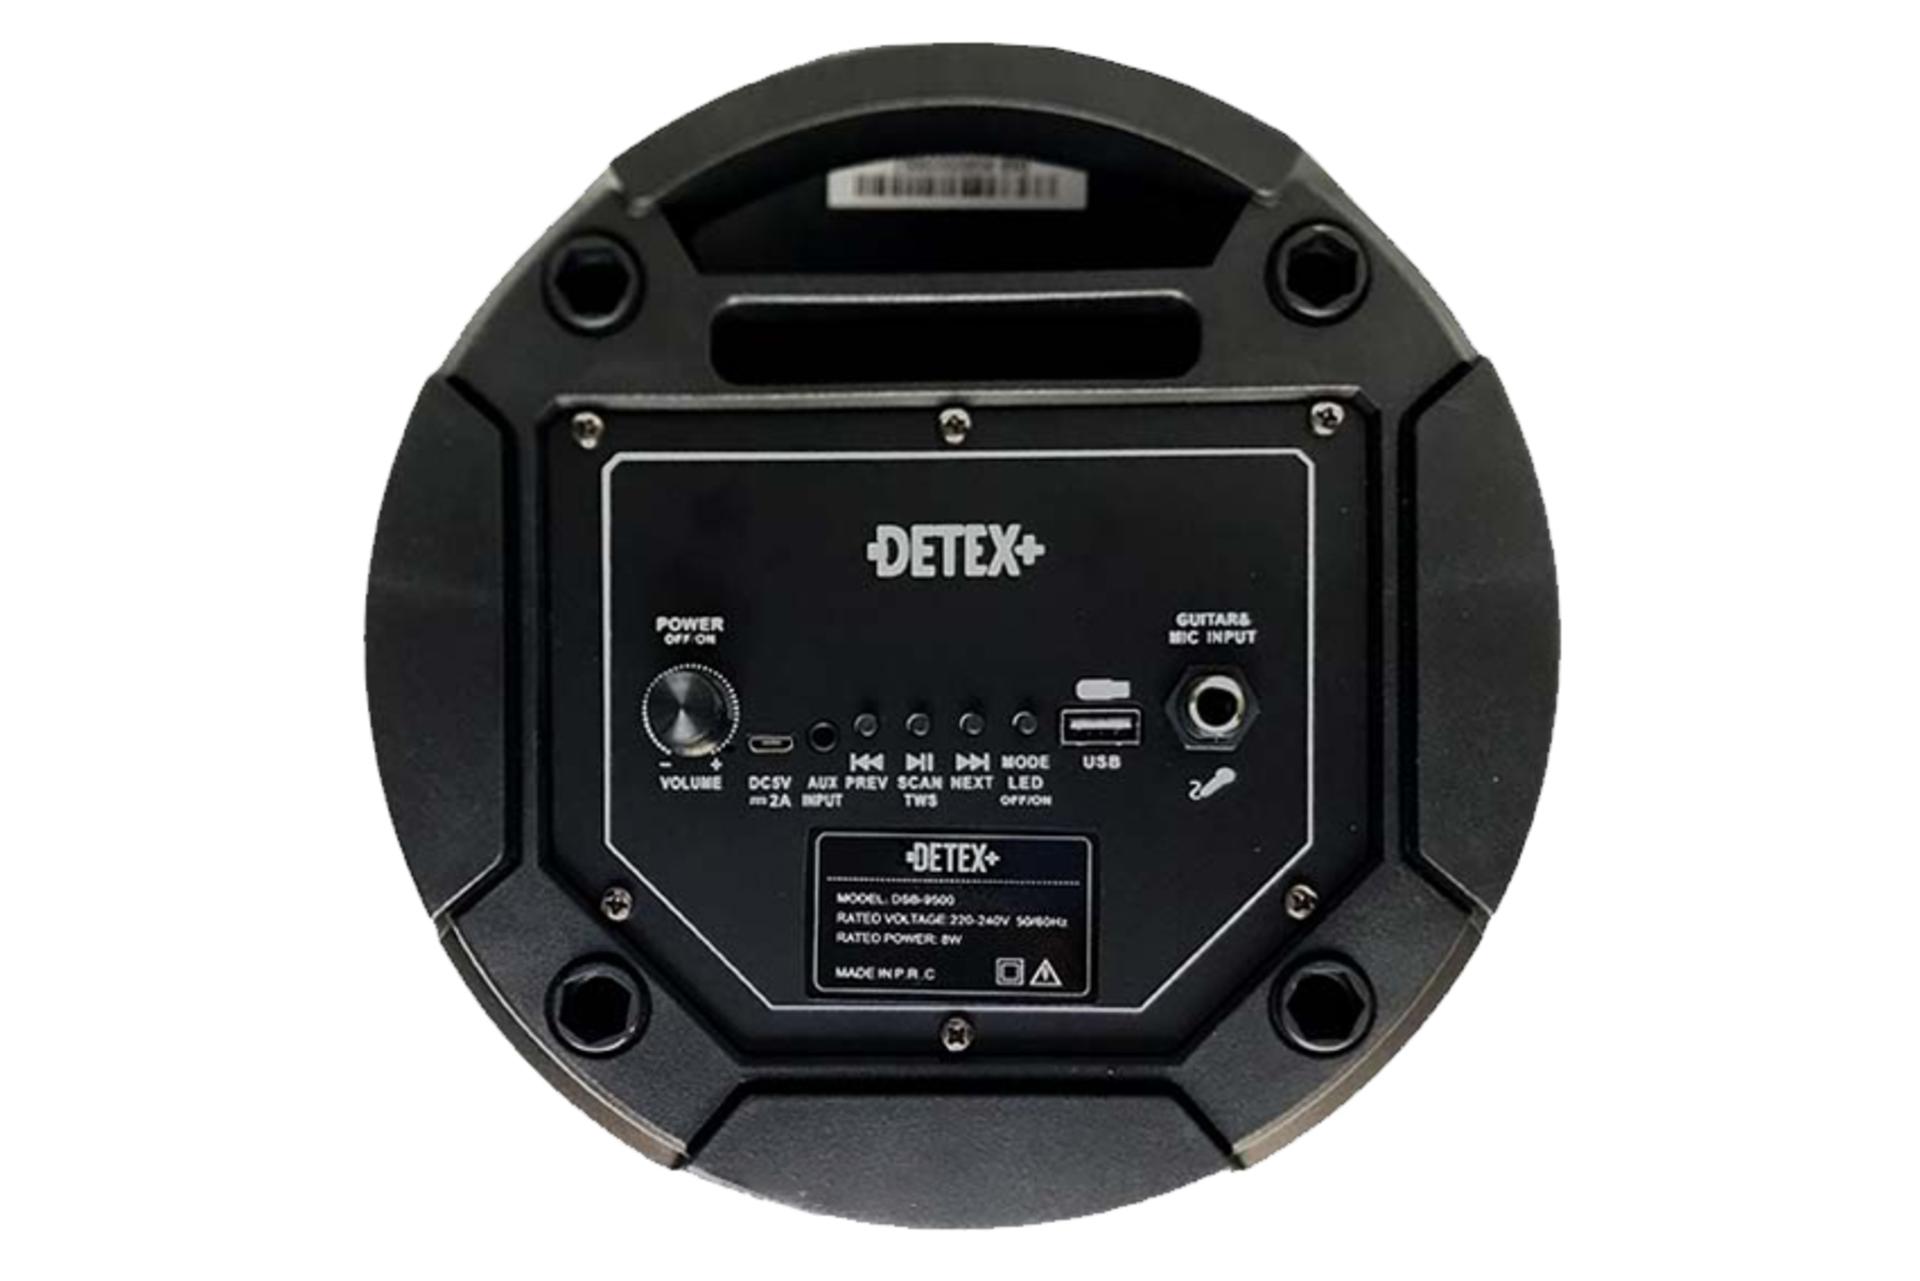 کانکتور اسپیکر دیتکس پلاس DETEX Plus DSB 9500